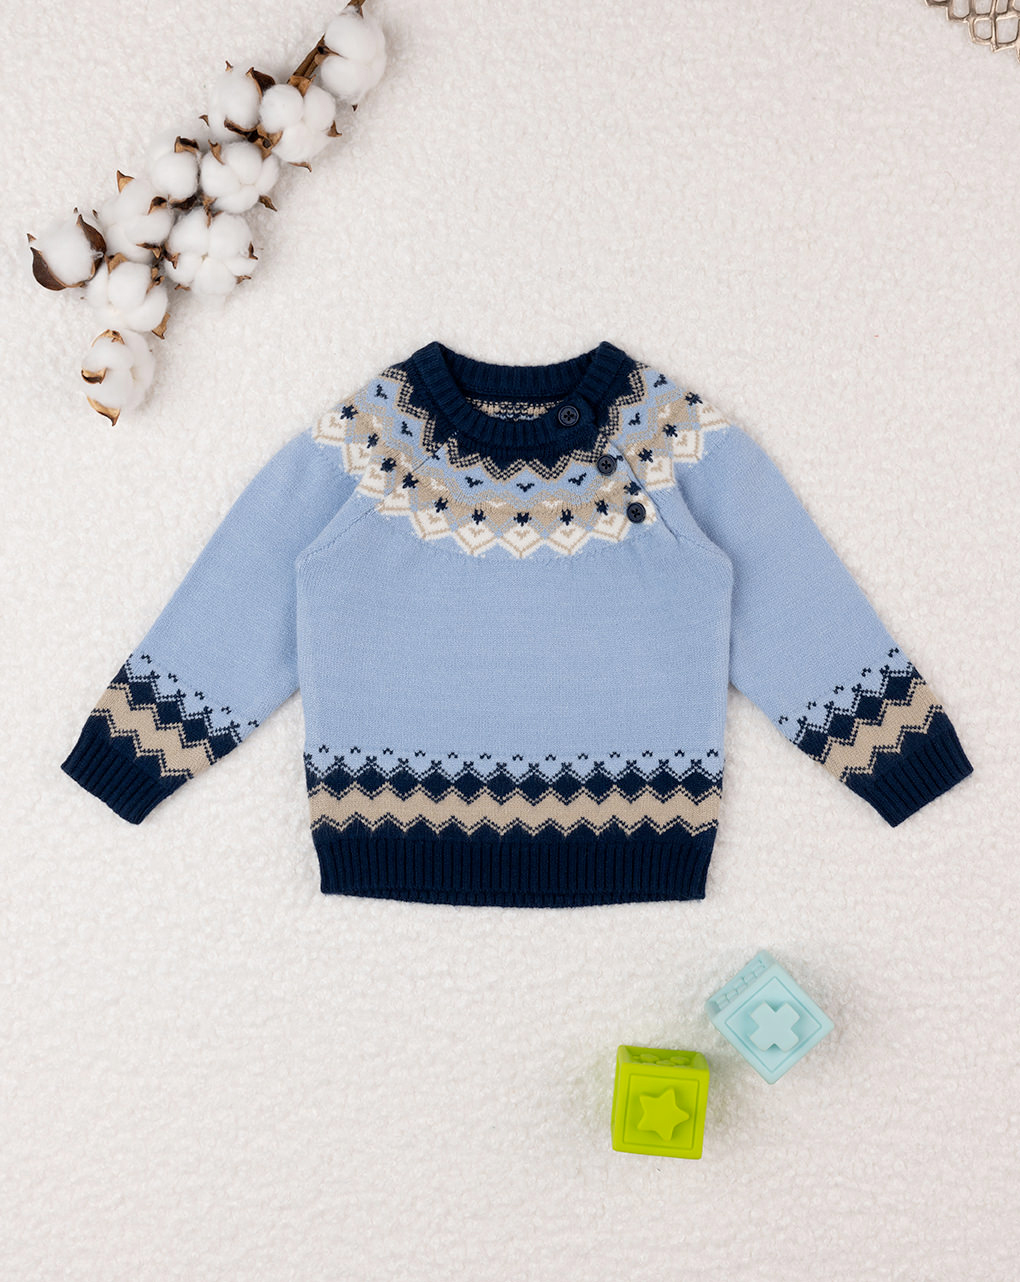 βρεφικό πουλόβερ γαλάζιο artic για αγόρι - Prénatal